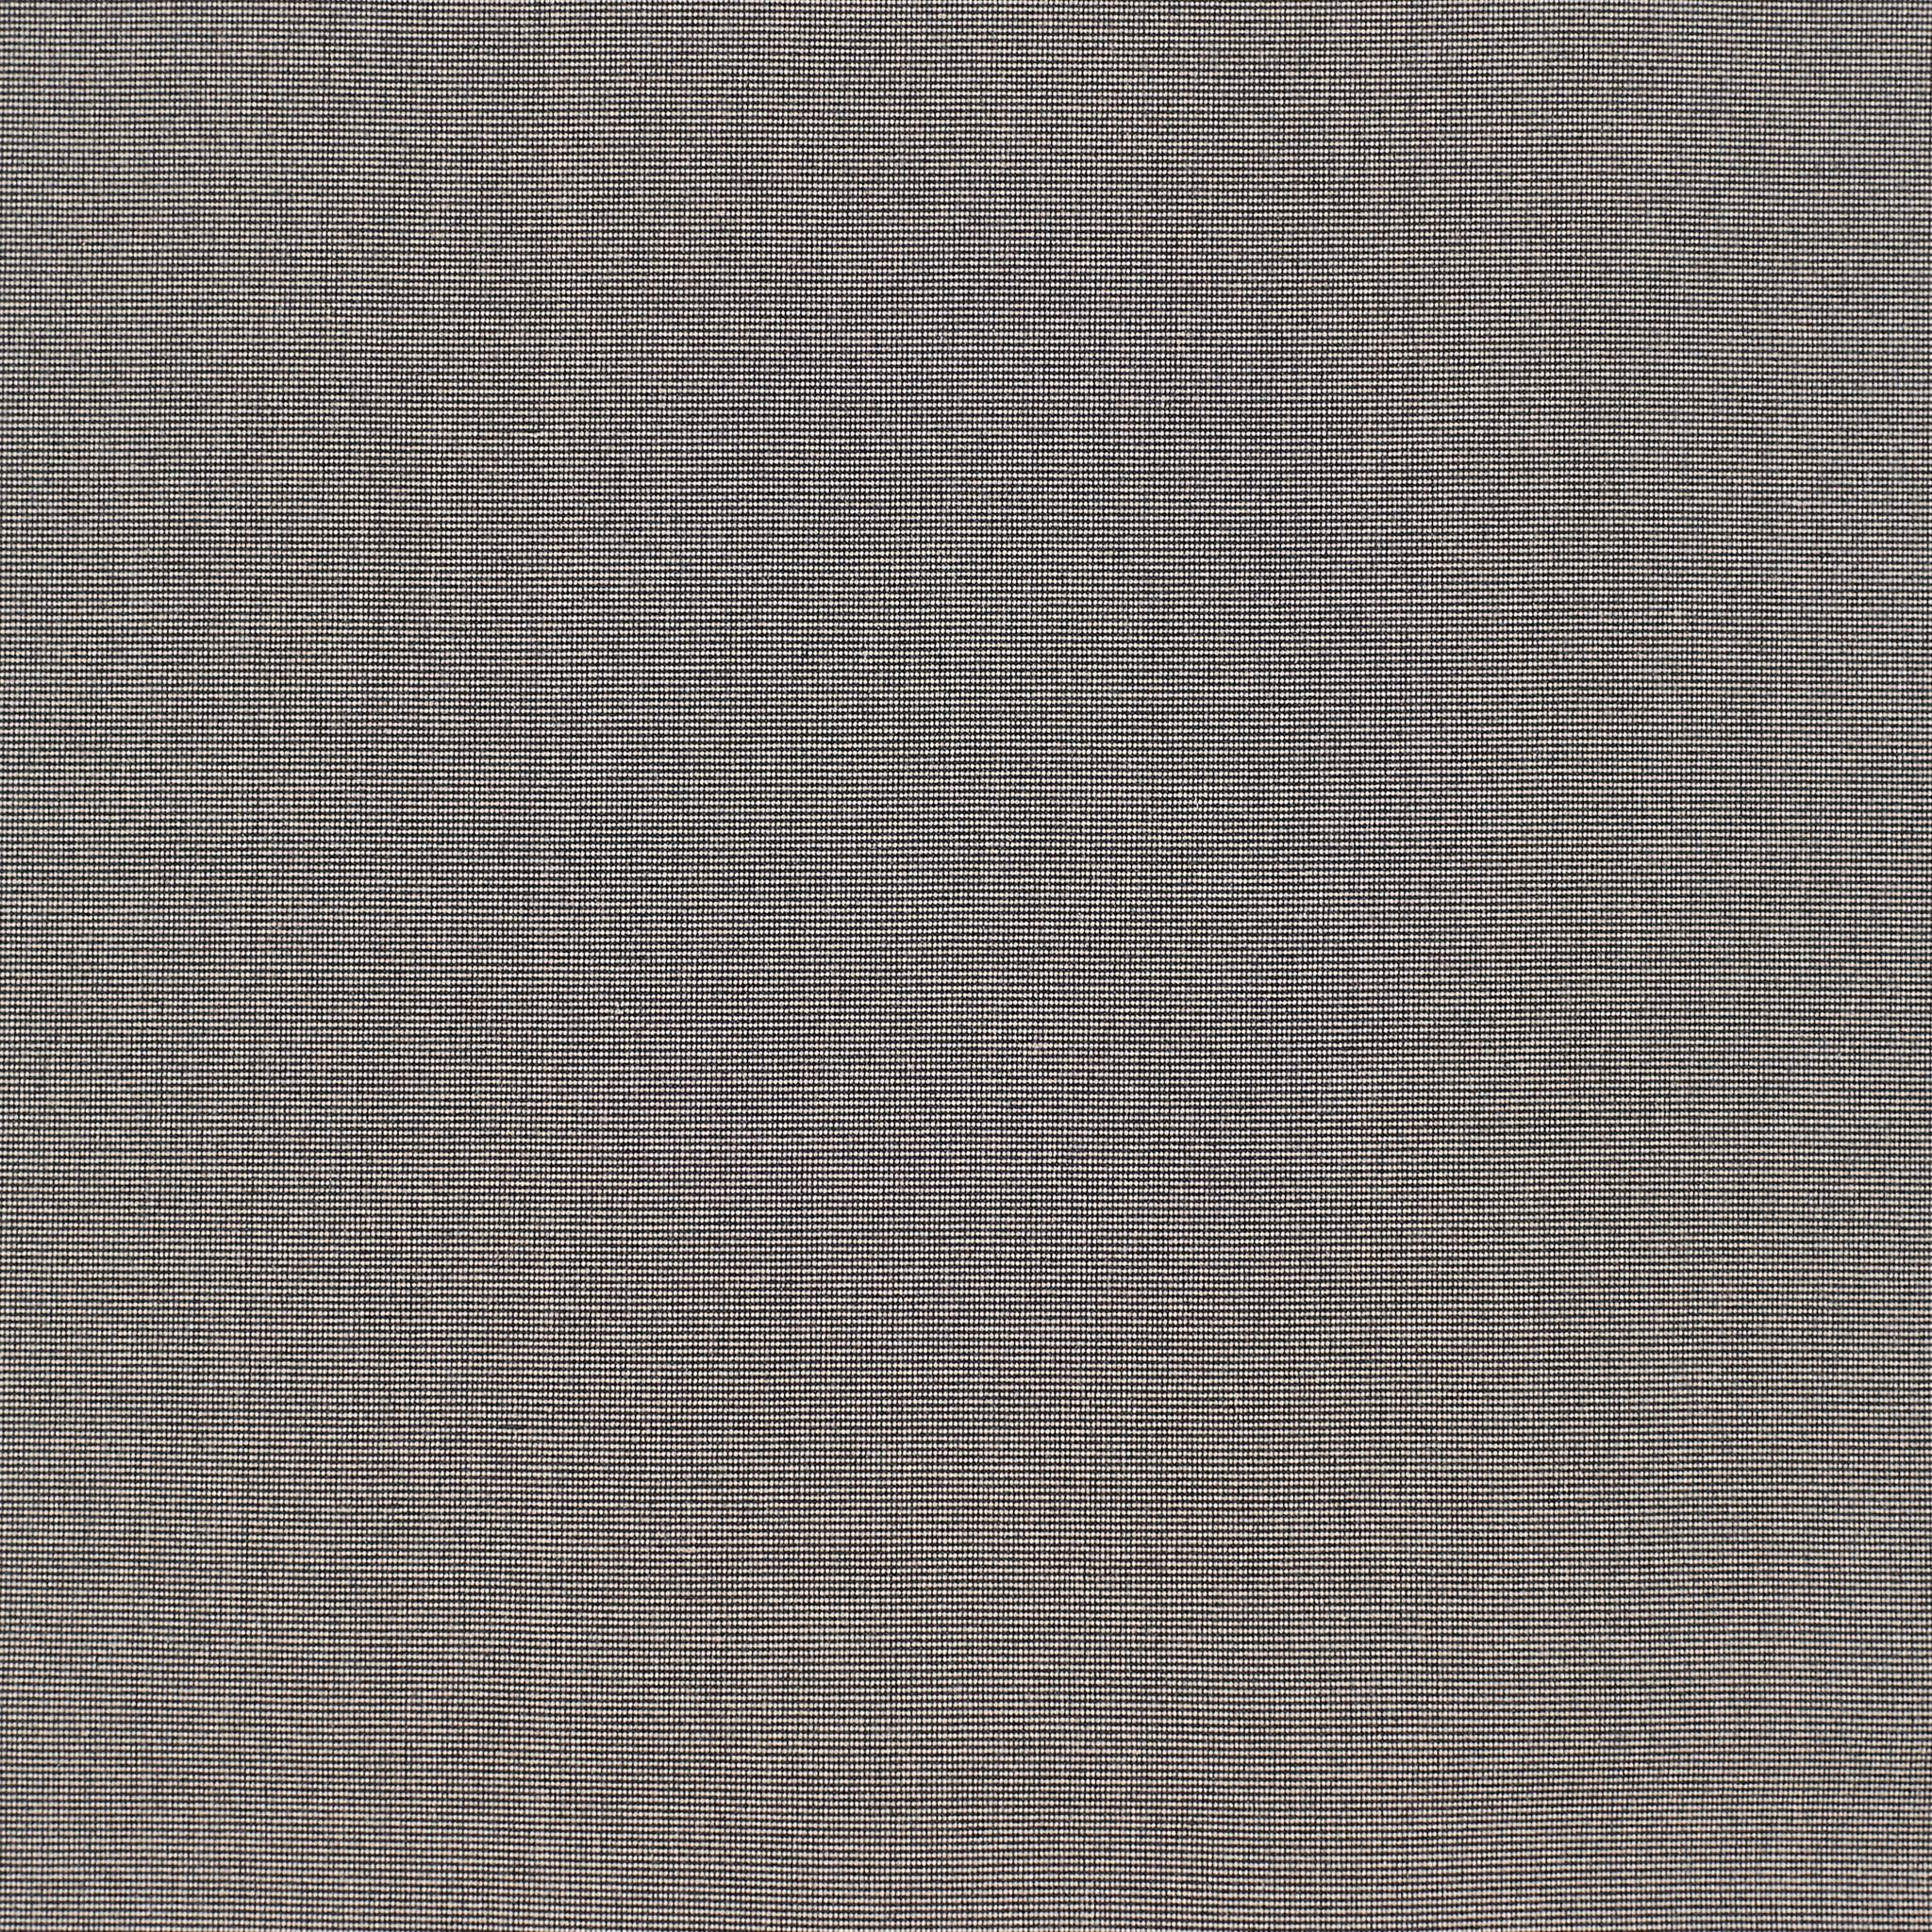 Lapis Wilton Carpet, Charcoal Default Title